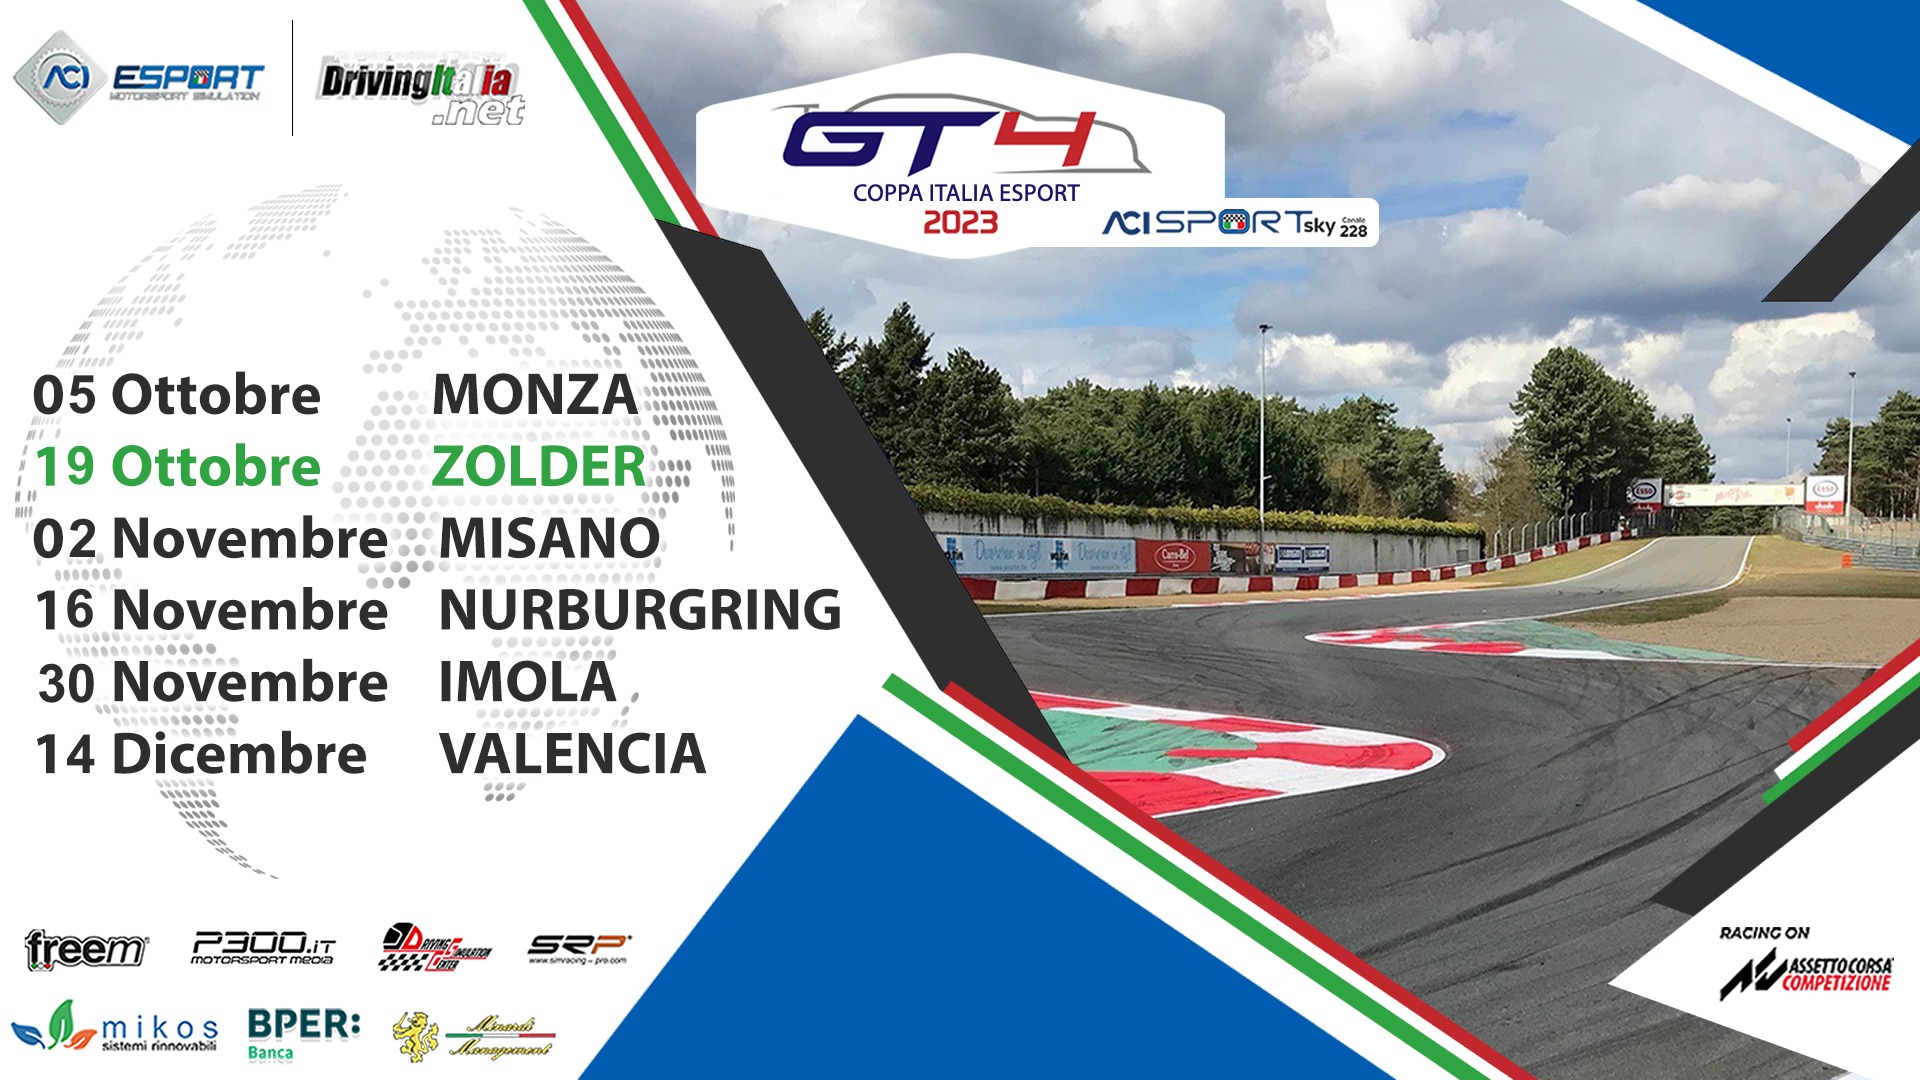 More information about "Coppa Italia GT4 Sprint ACI Esport: giovedi 19 in diretta il round 2 a ZOLDER"